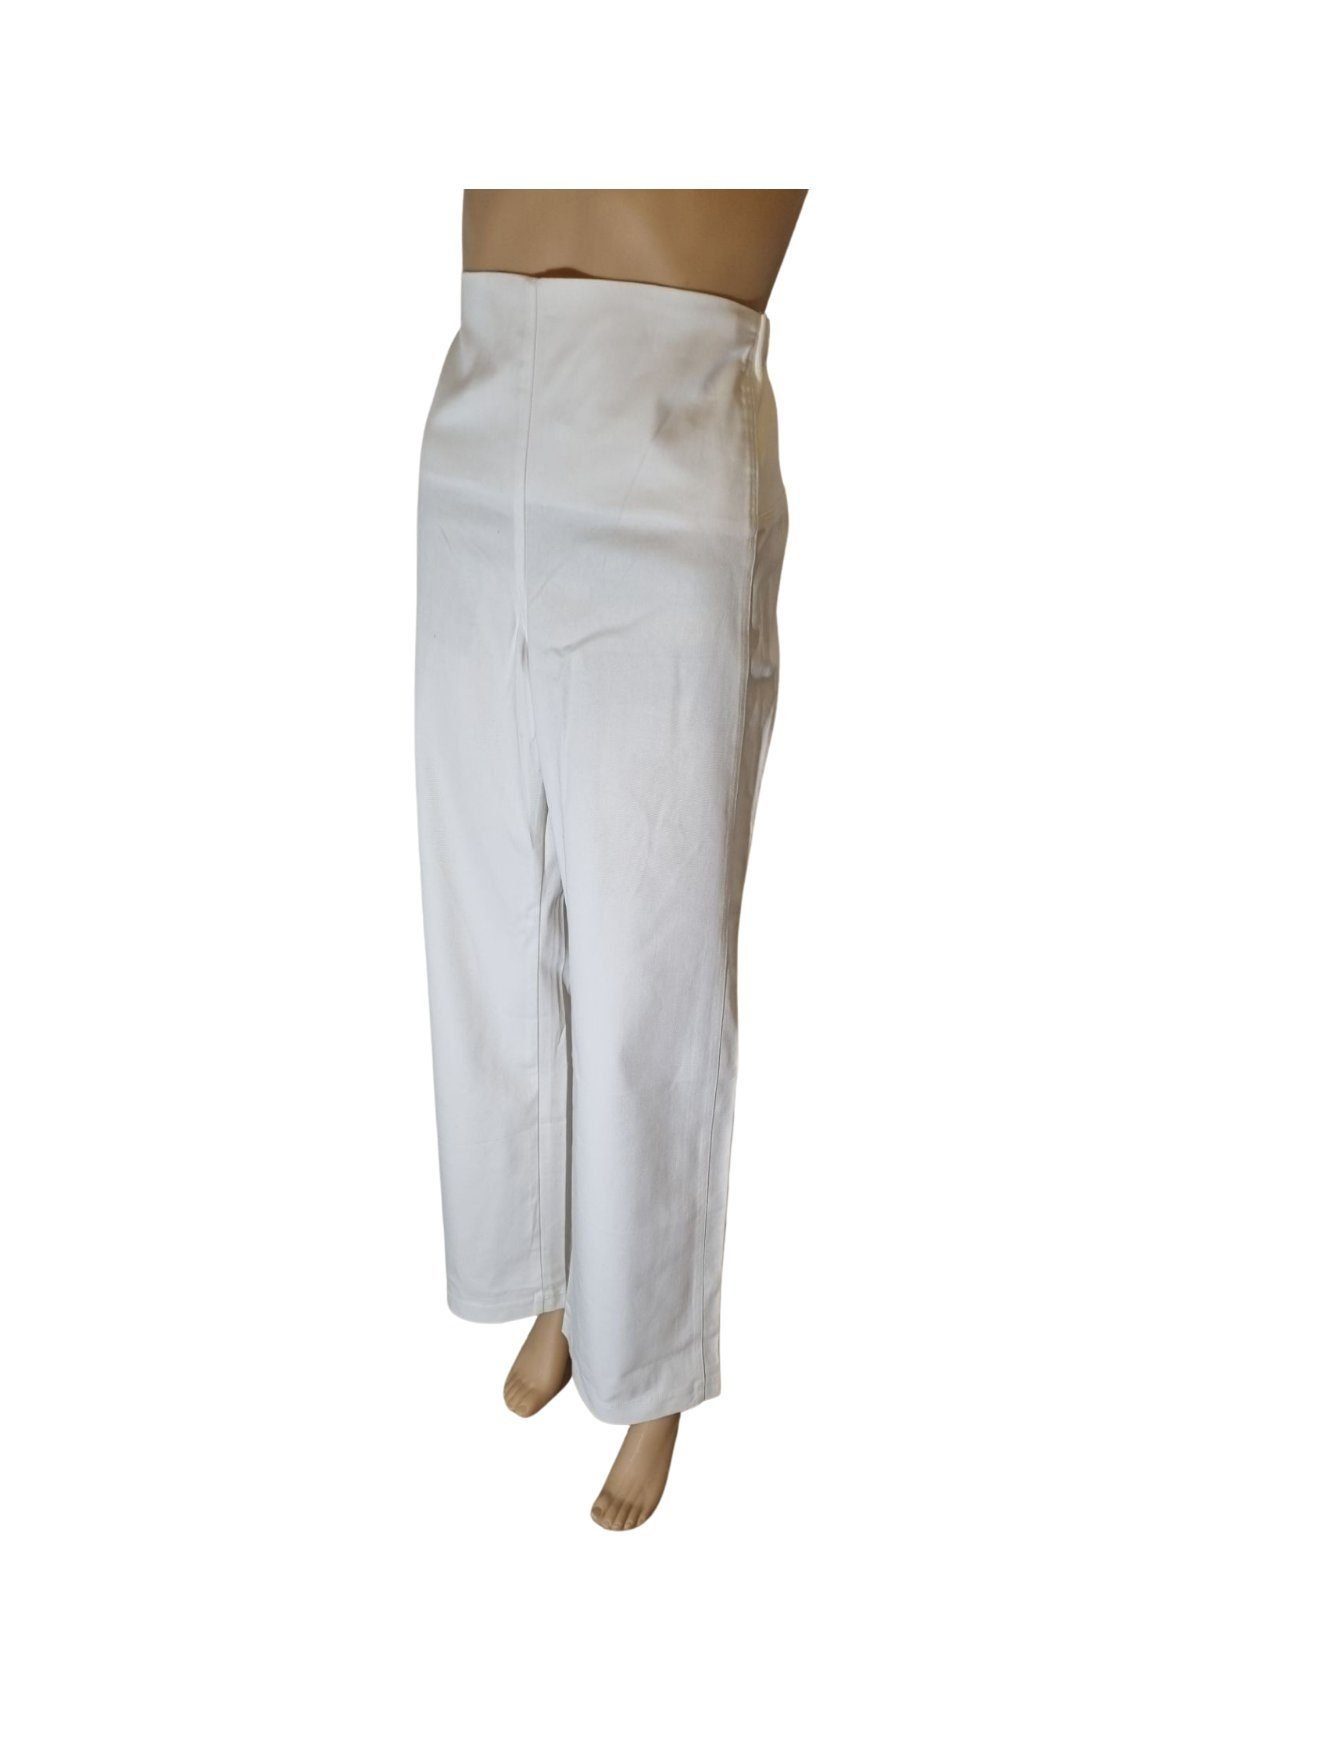 Collection Linique Umstandshose ORA-22431 weiß gerade Hosenform